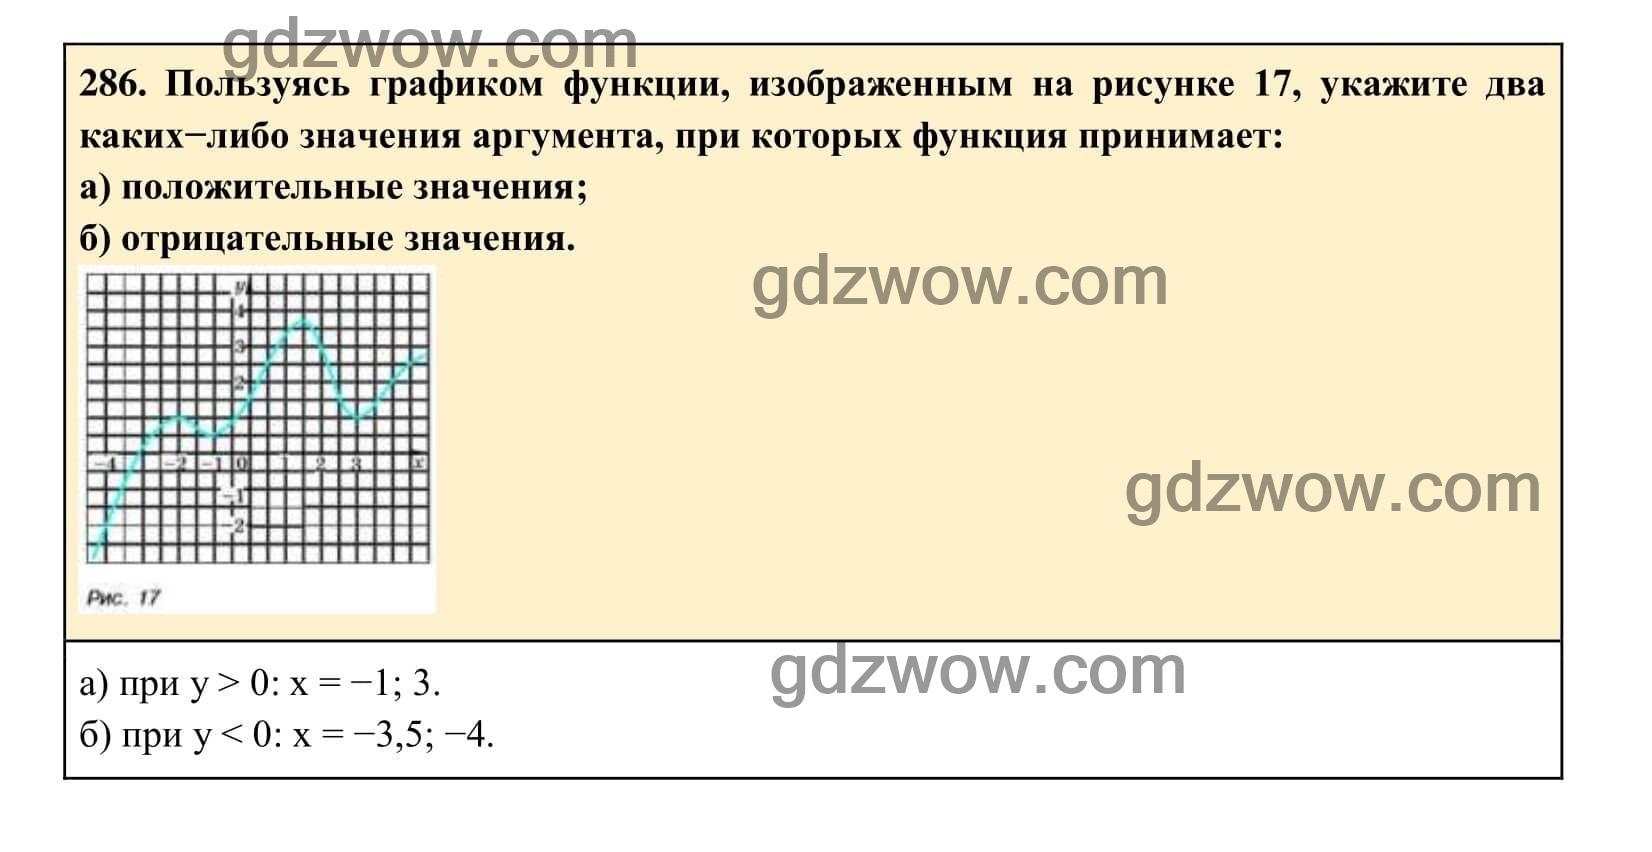 Упражнение 288 - ГДЗ по Алгебре 7 класс Учебник Макарычев (решебник) - GDZwow